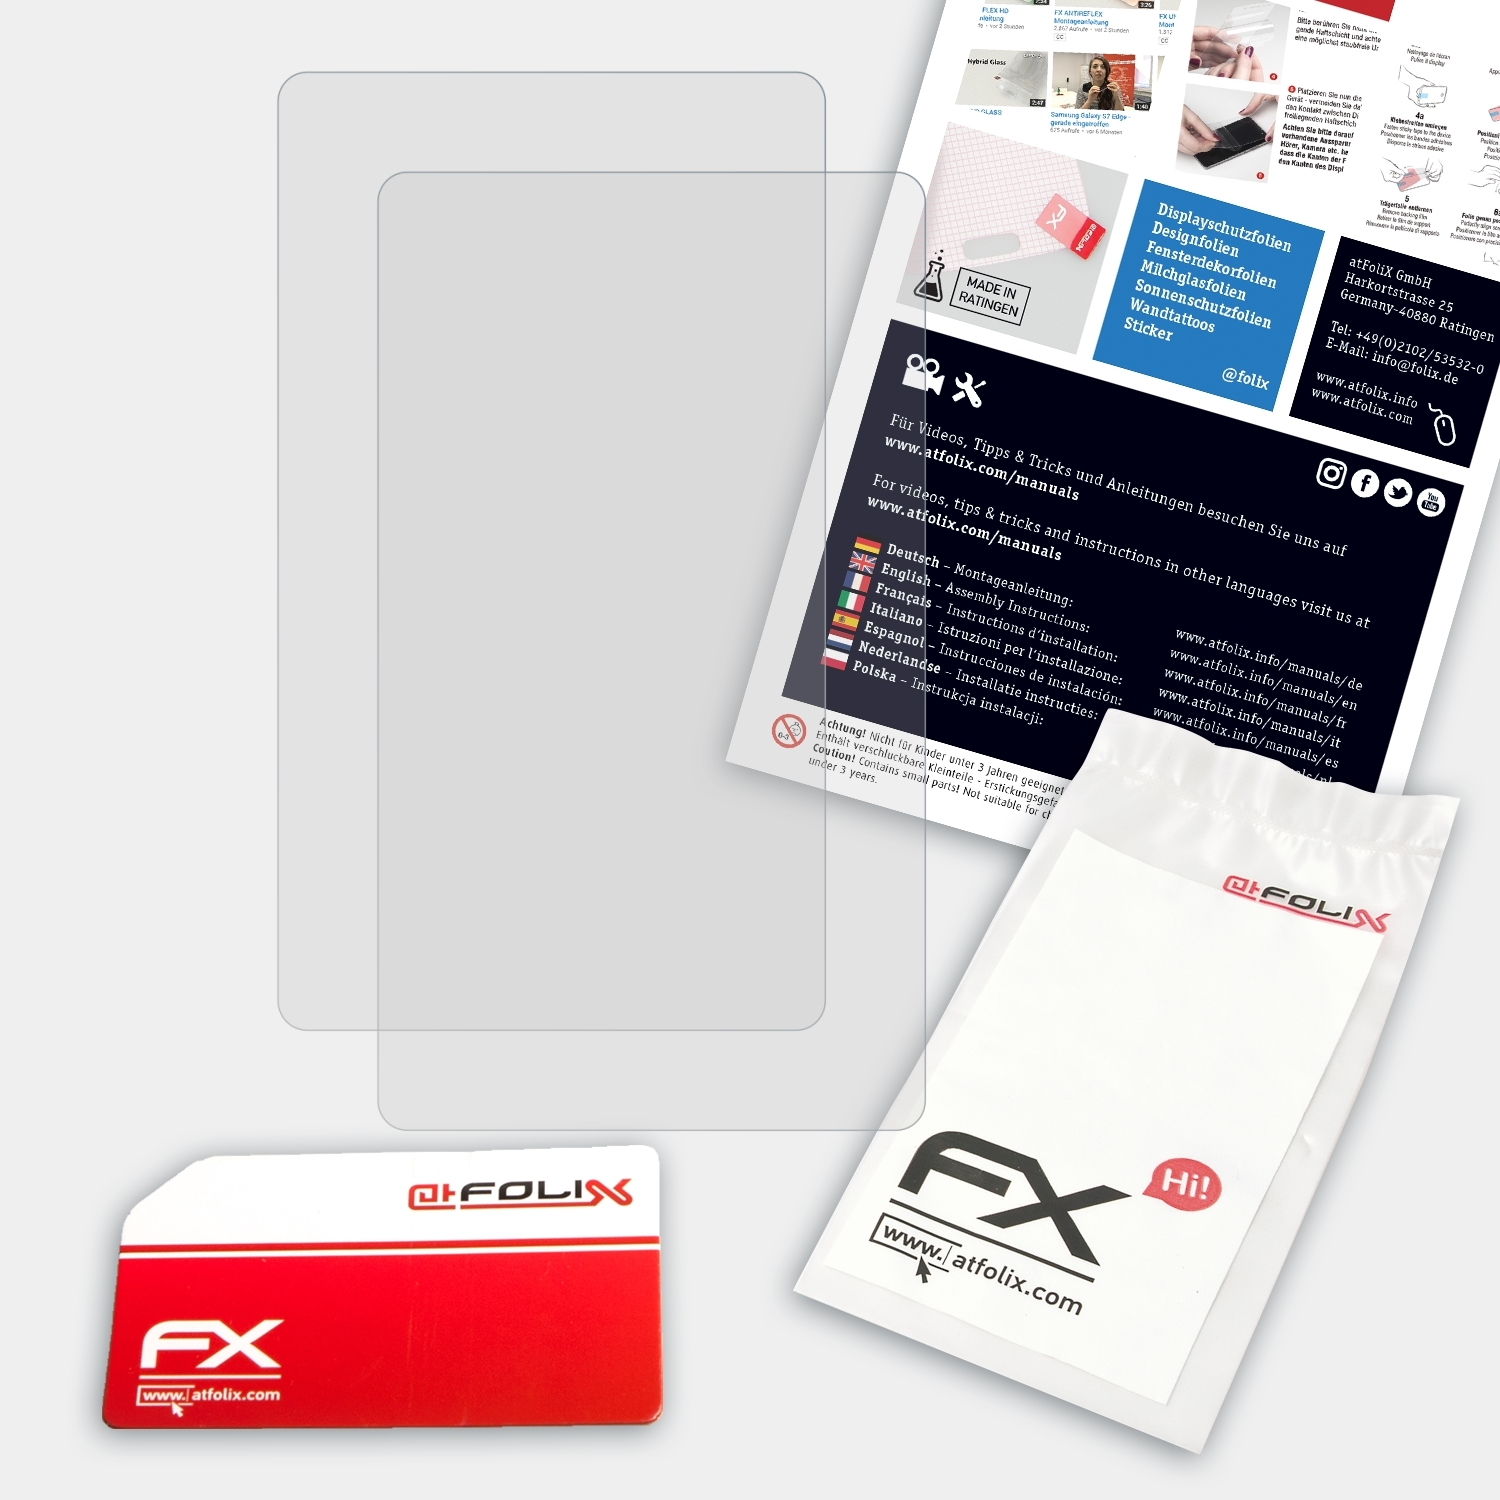 ATFOLIX 2x FX-Antireflex Casio Displayschutz(für FX-9860GIII)